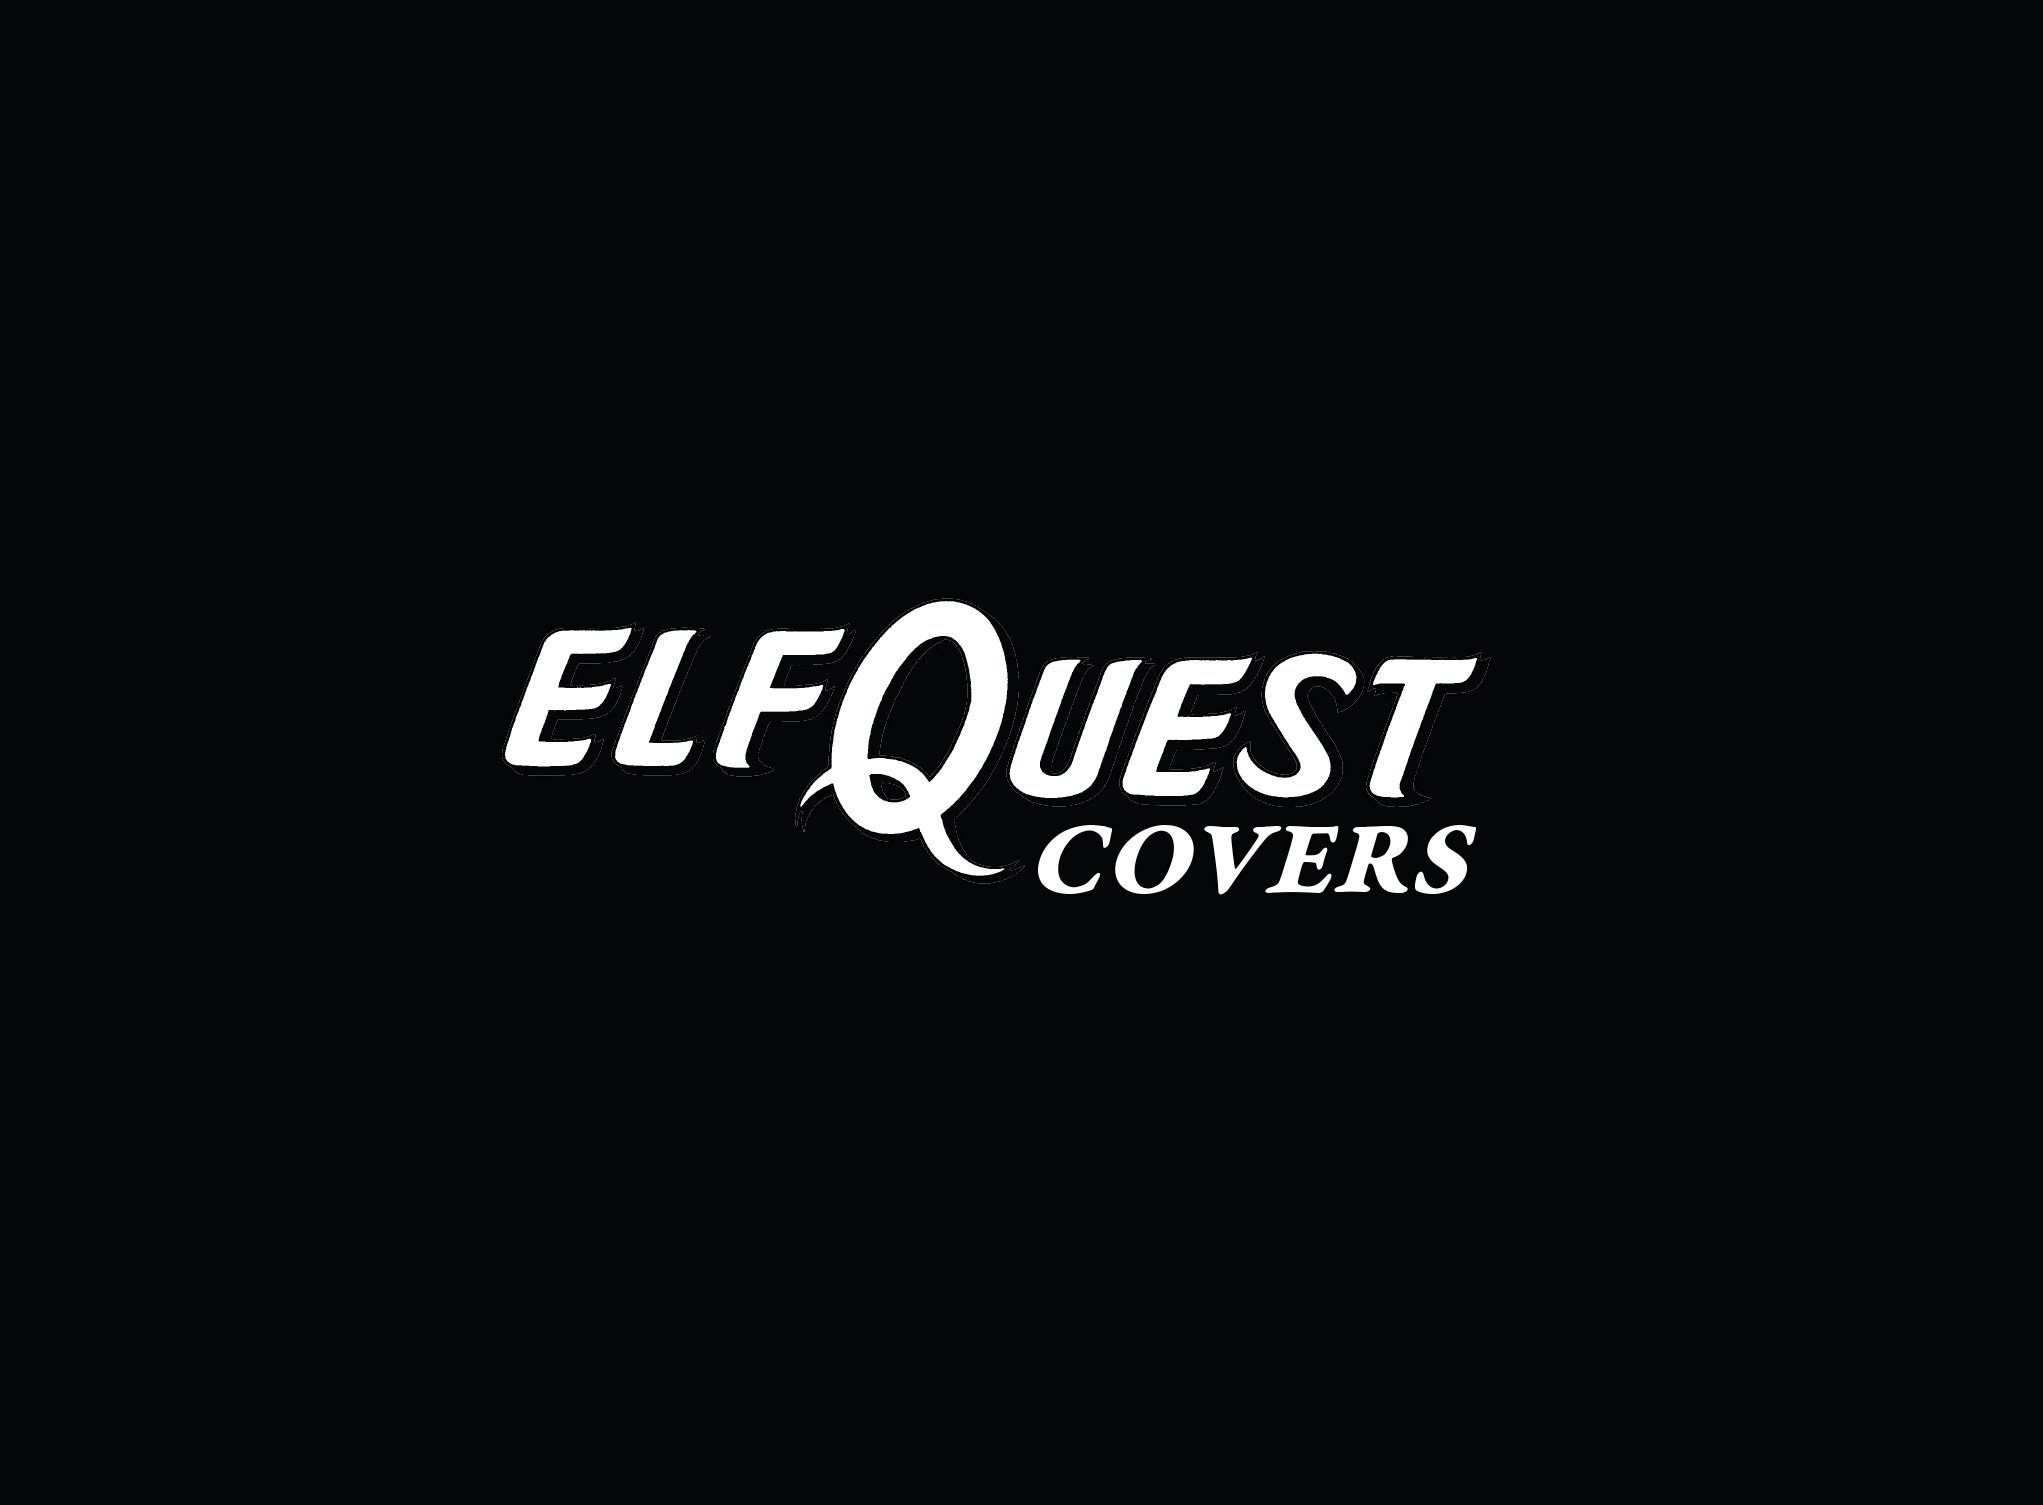 Elfquest-homepage-1-left-KS-date.jpg